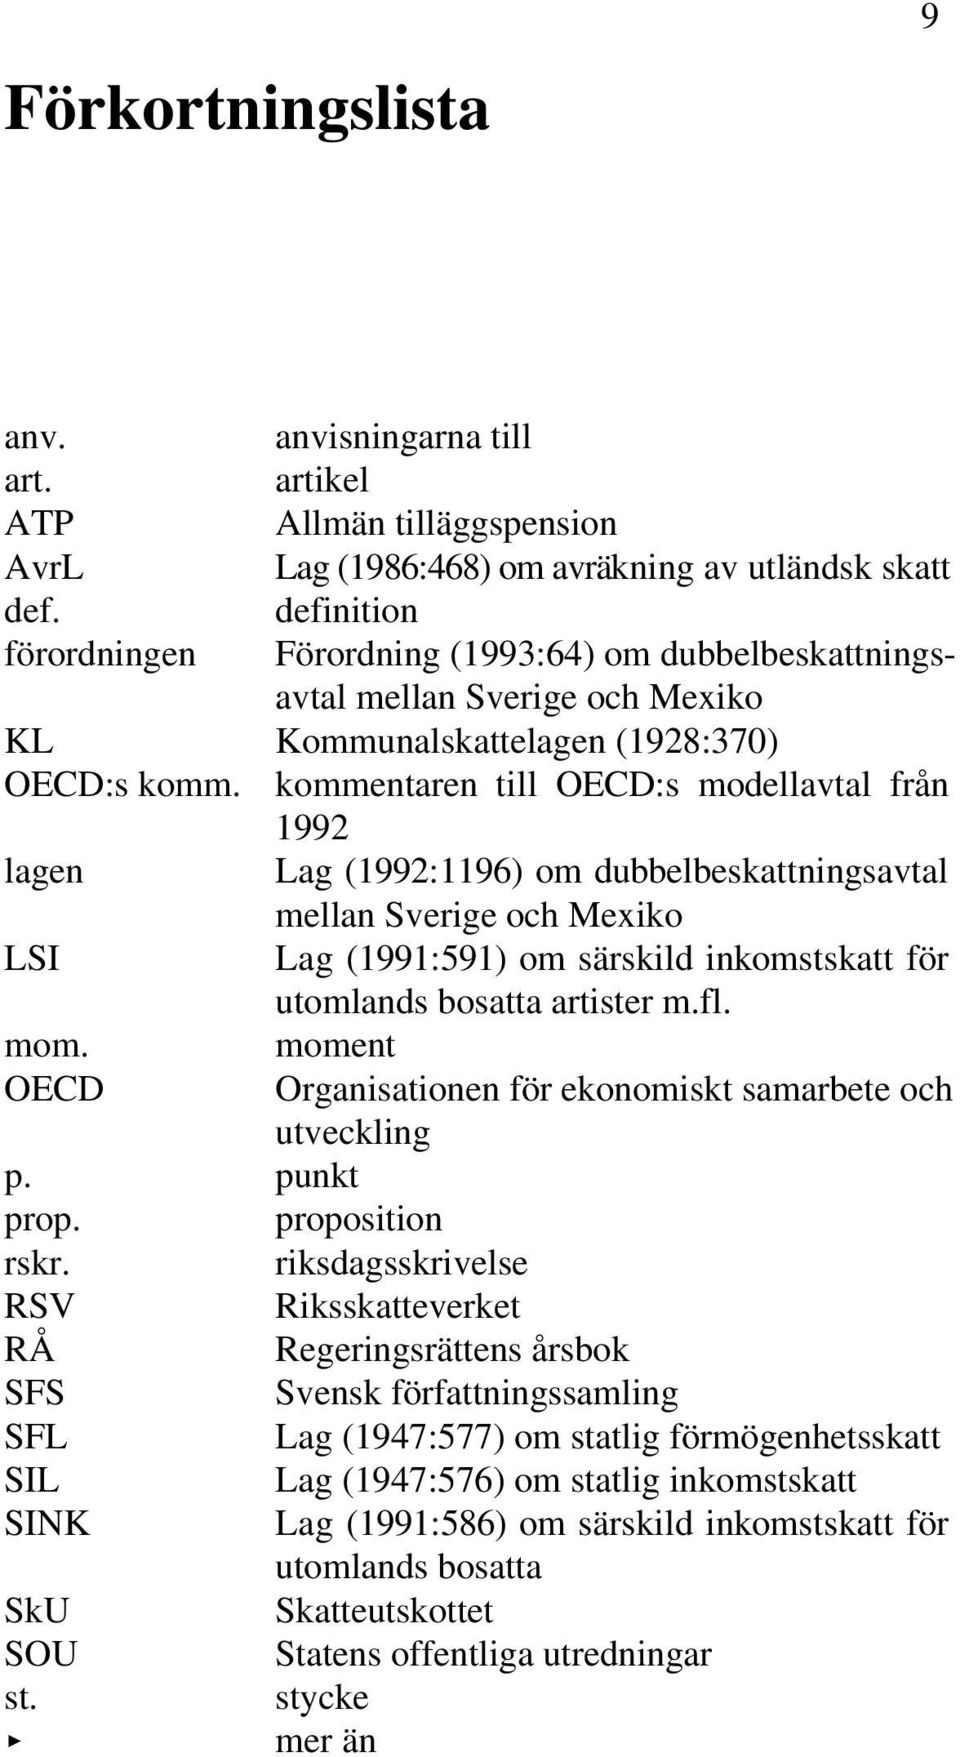 kommentaren till OECD:s modellavtal från 1992 lagen Lag (1992:1196) om dubbelbeskattningsavtal mellan Sverige och Mexiko LSI Lag (1991:591) om särskild inkomstskatt för utomlands bosatta artister m.